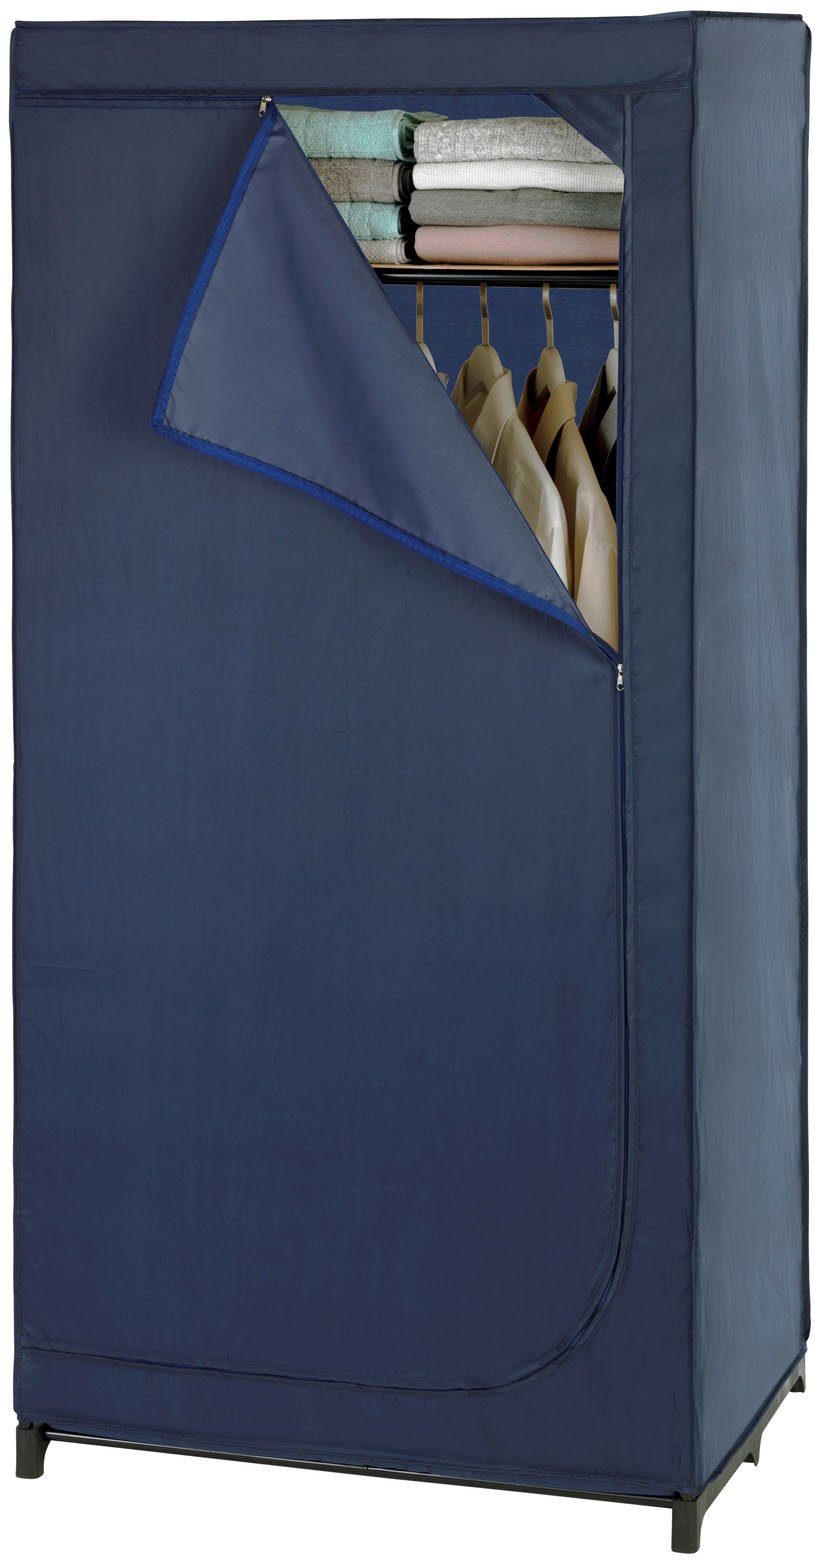 WENKO Kleiderschrank Business Polyester-Qualität, mit Ablage, Höhe 160 cm,  Hochwertiger Falt-Schrank mit zusätzlichem Ablagefach und Reißverschluss | Stahlschränke